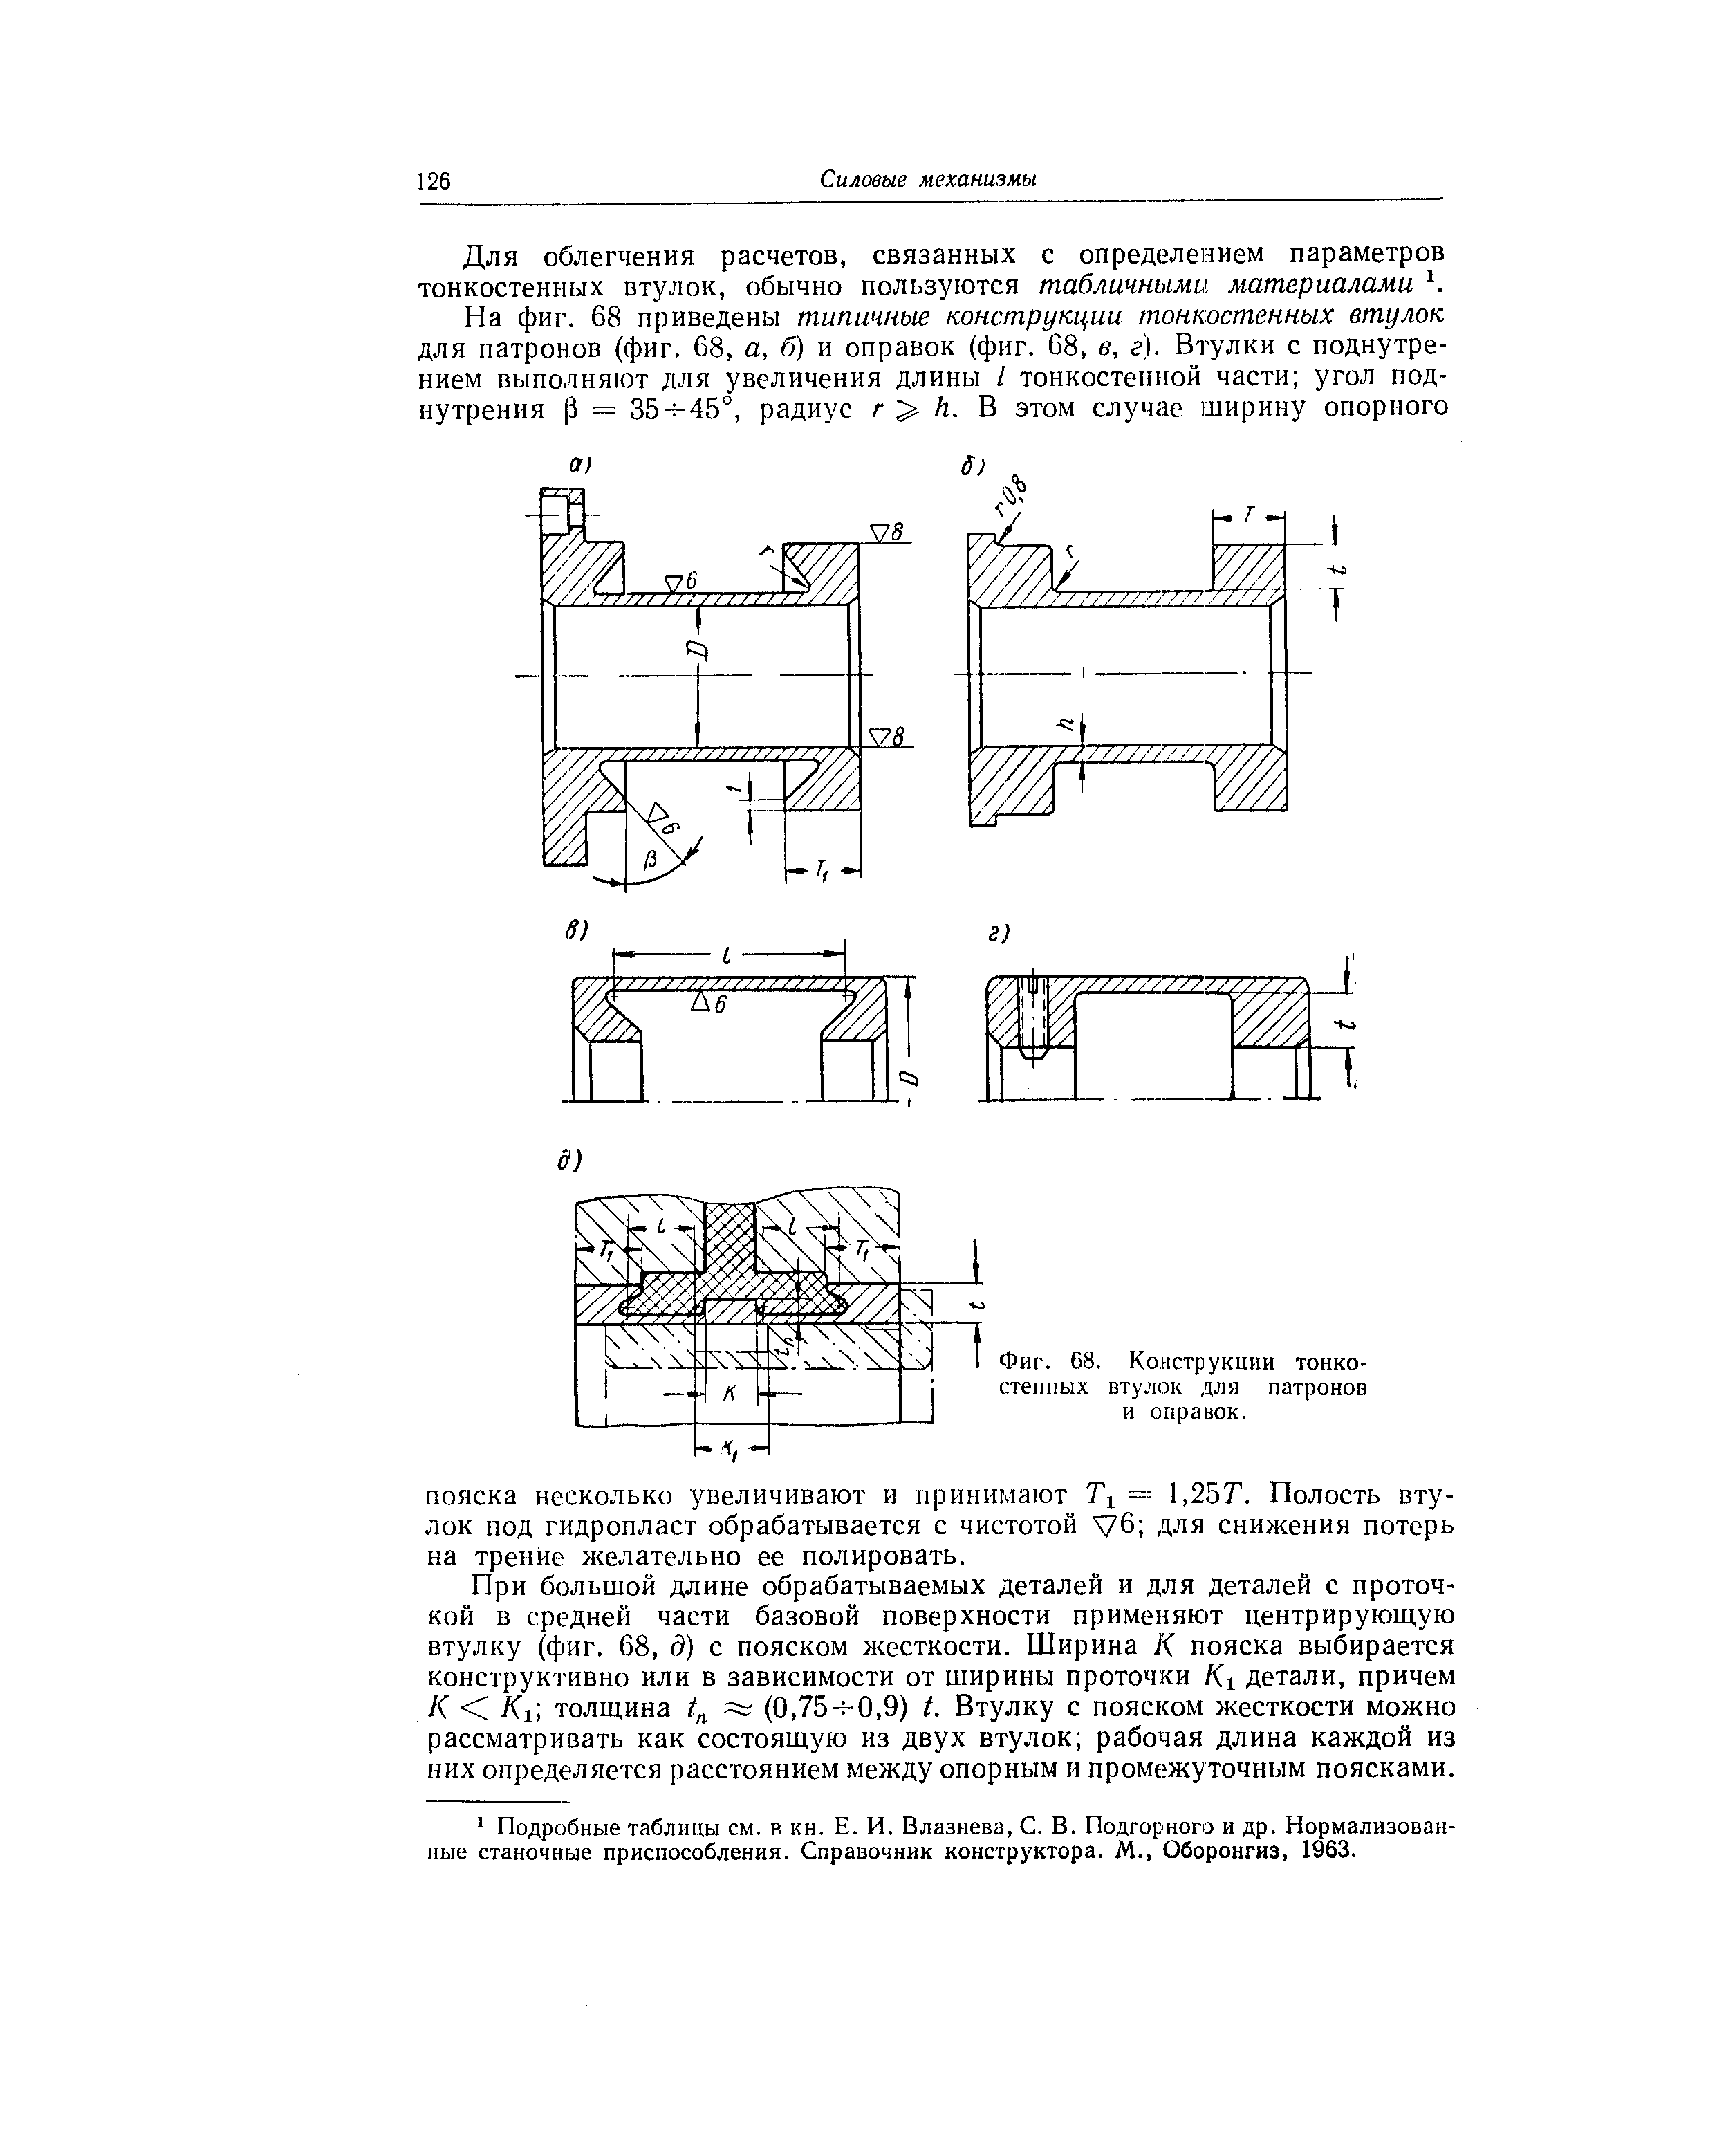 Фиг. 68. Конструкции тонкостенных втулок для патронов и оправок.
